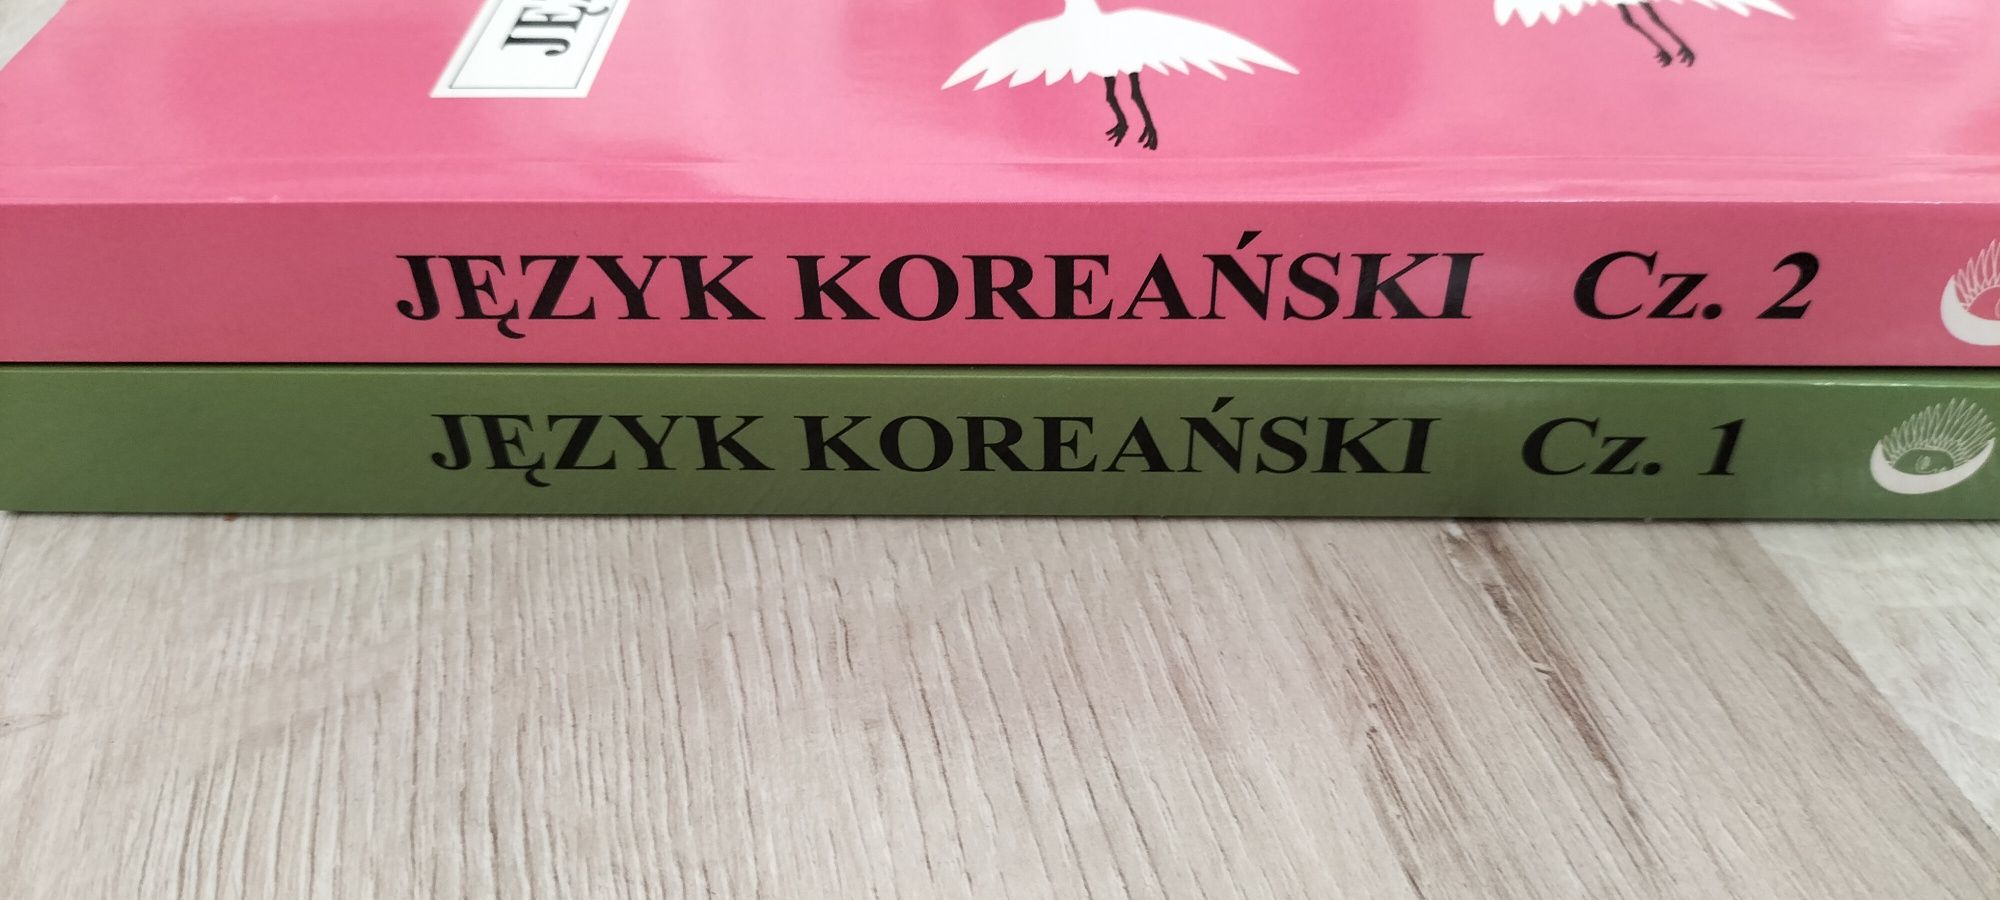 NOWE język koreański podręczniki część 1 i 2 kpop k-pop